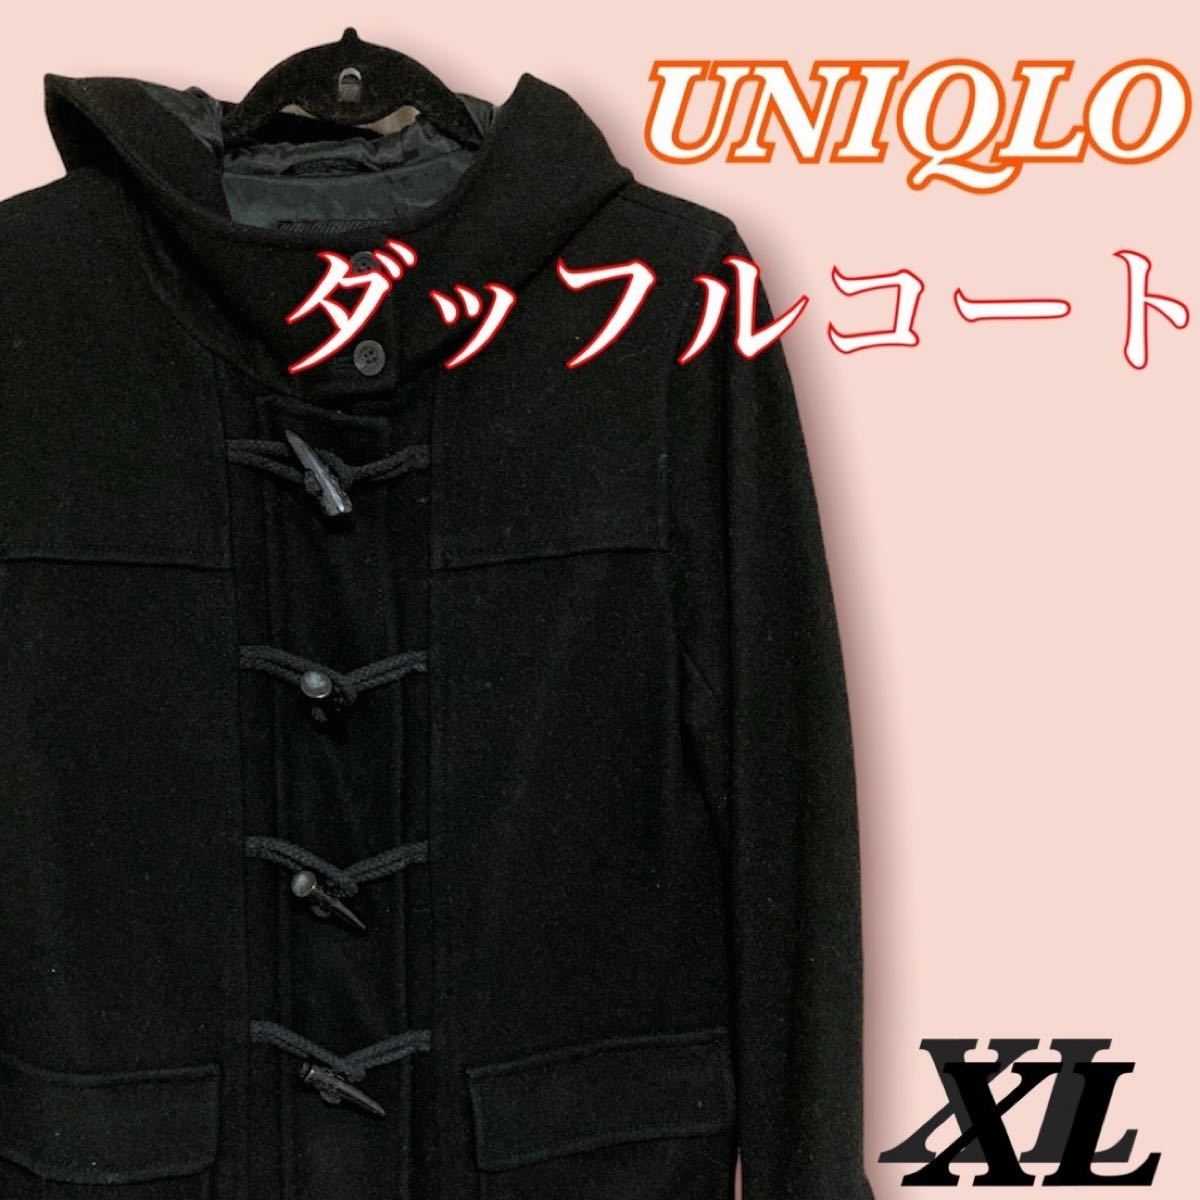 セール特価 ユニクロ UNIQLO ダッフルコート 黒 XL 大きいサイズ これはお得-ファッション,レディースファッション -  www.writeawriting.com